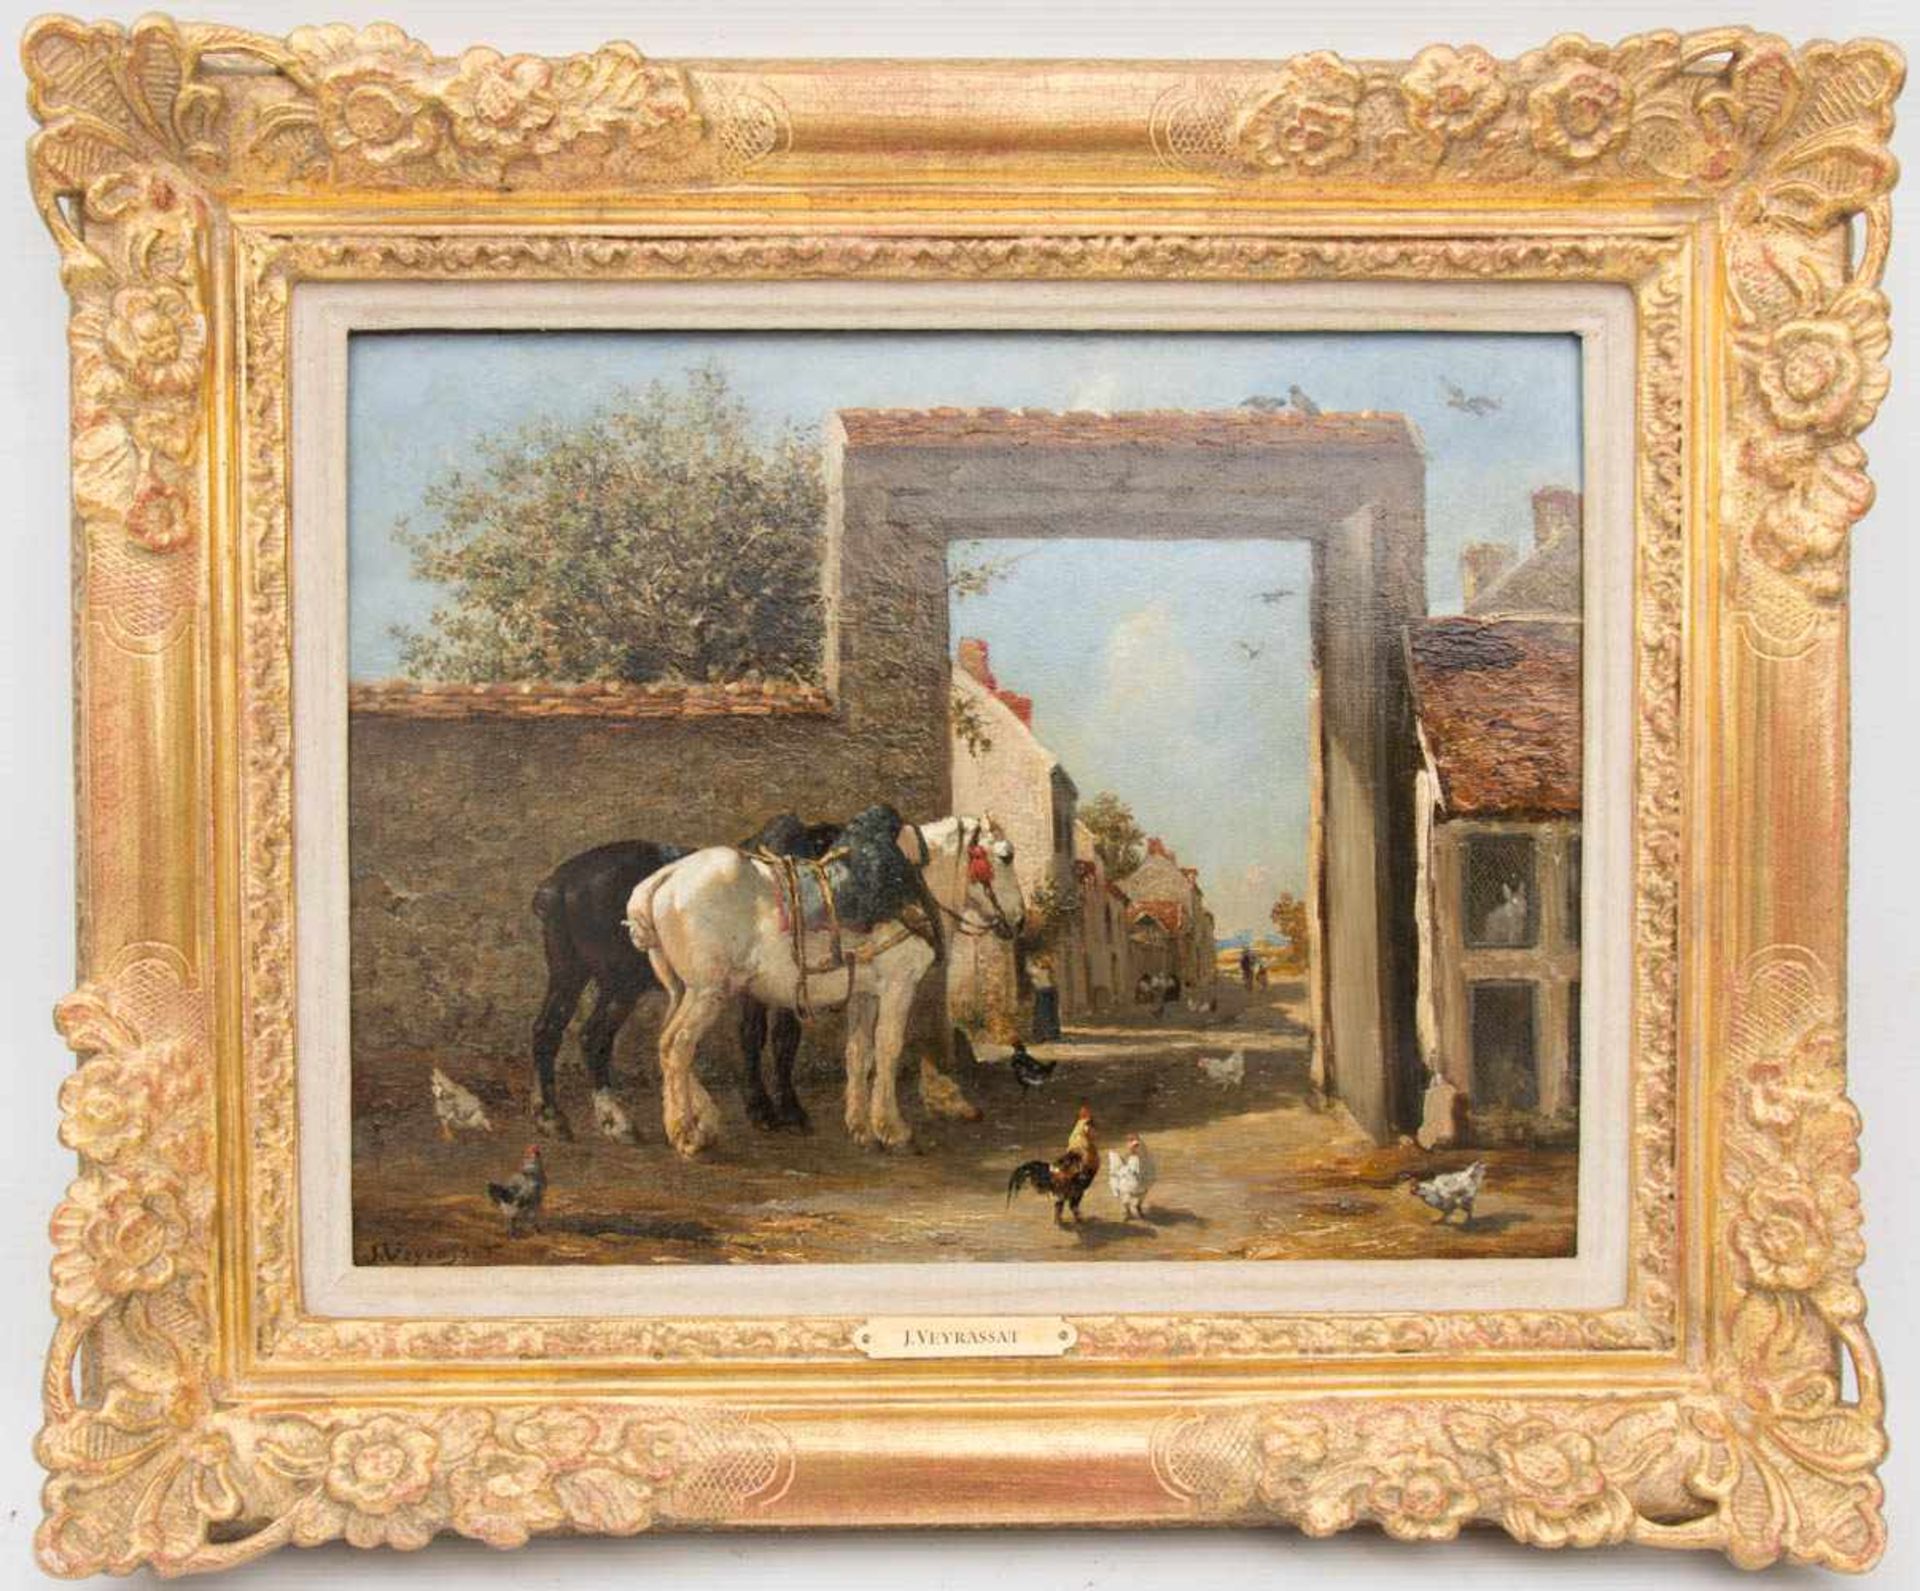 JULESJAQUES VEYRASSAT, Pferde und Hühner, Öl/Holz, Deutschland , 19. JhJULESJAQUES VEYRASSAT (1828-